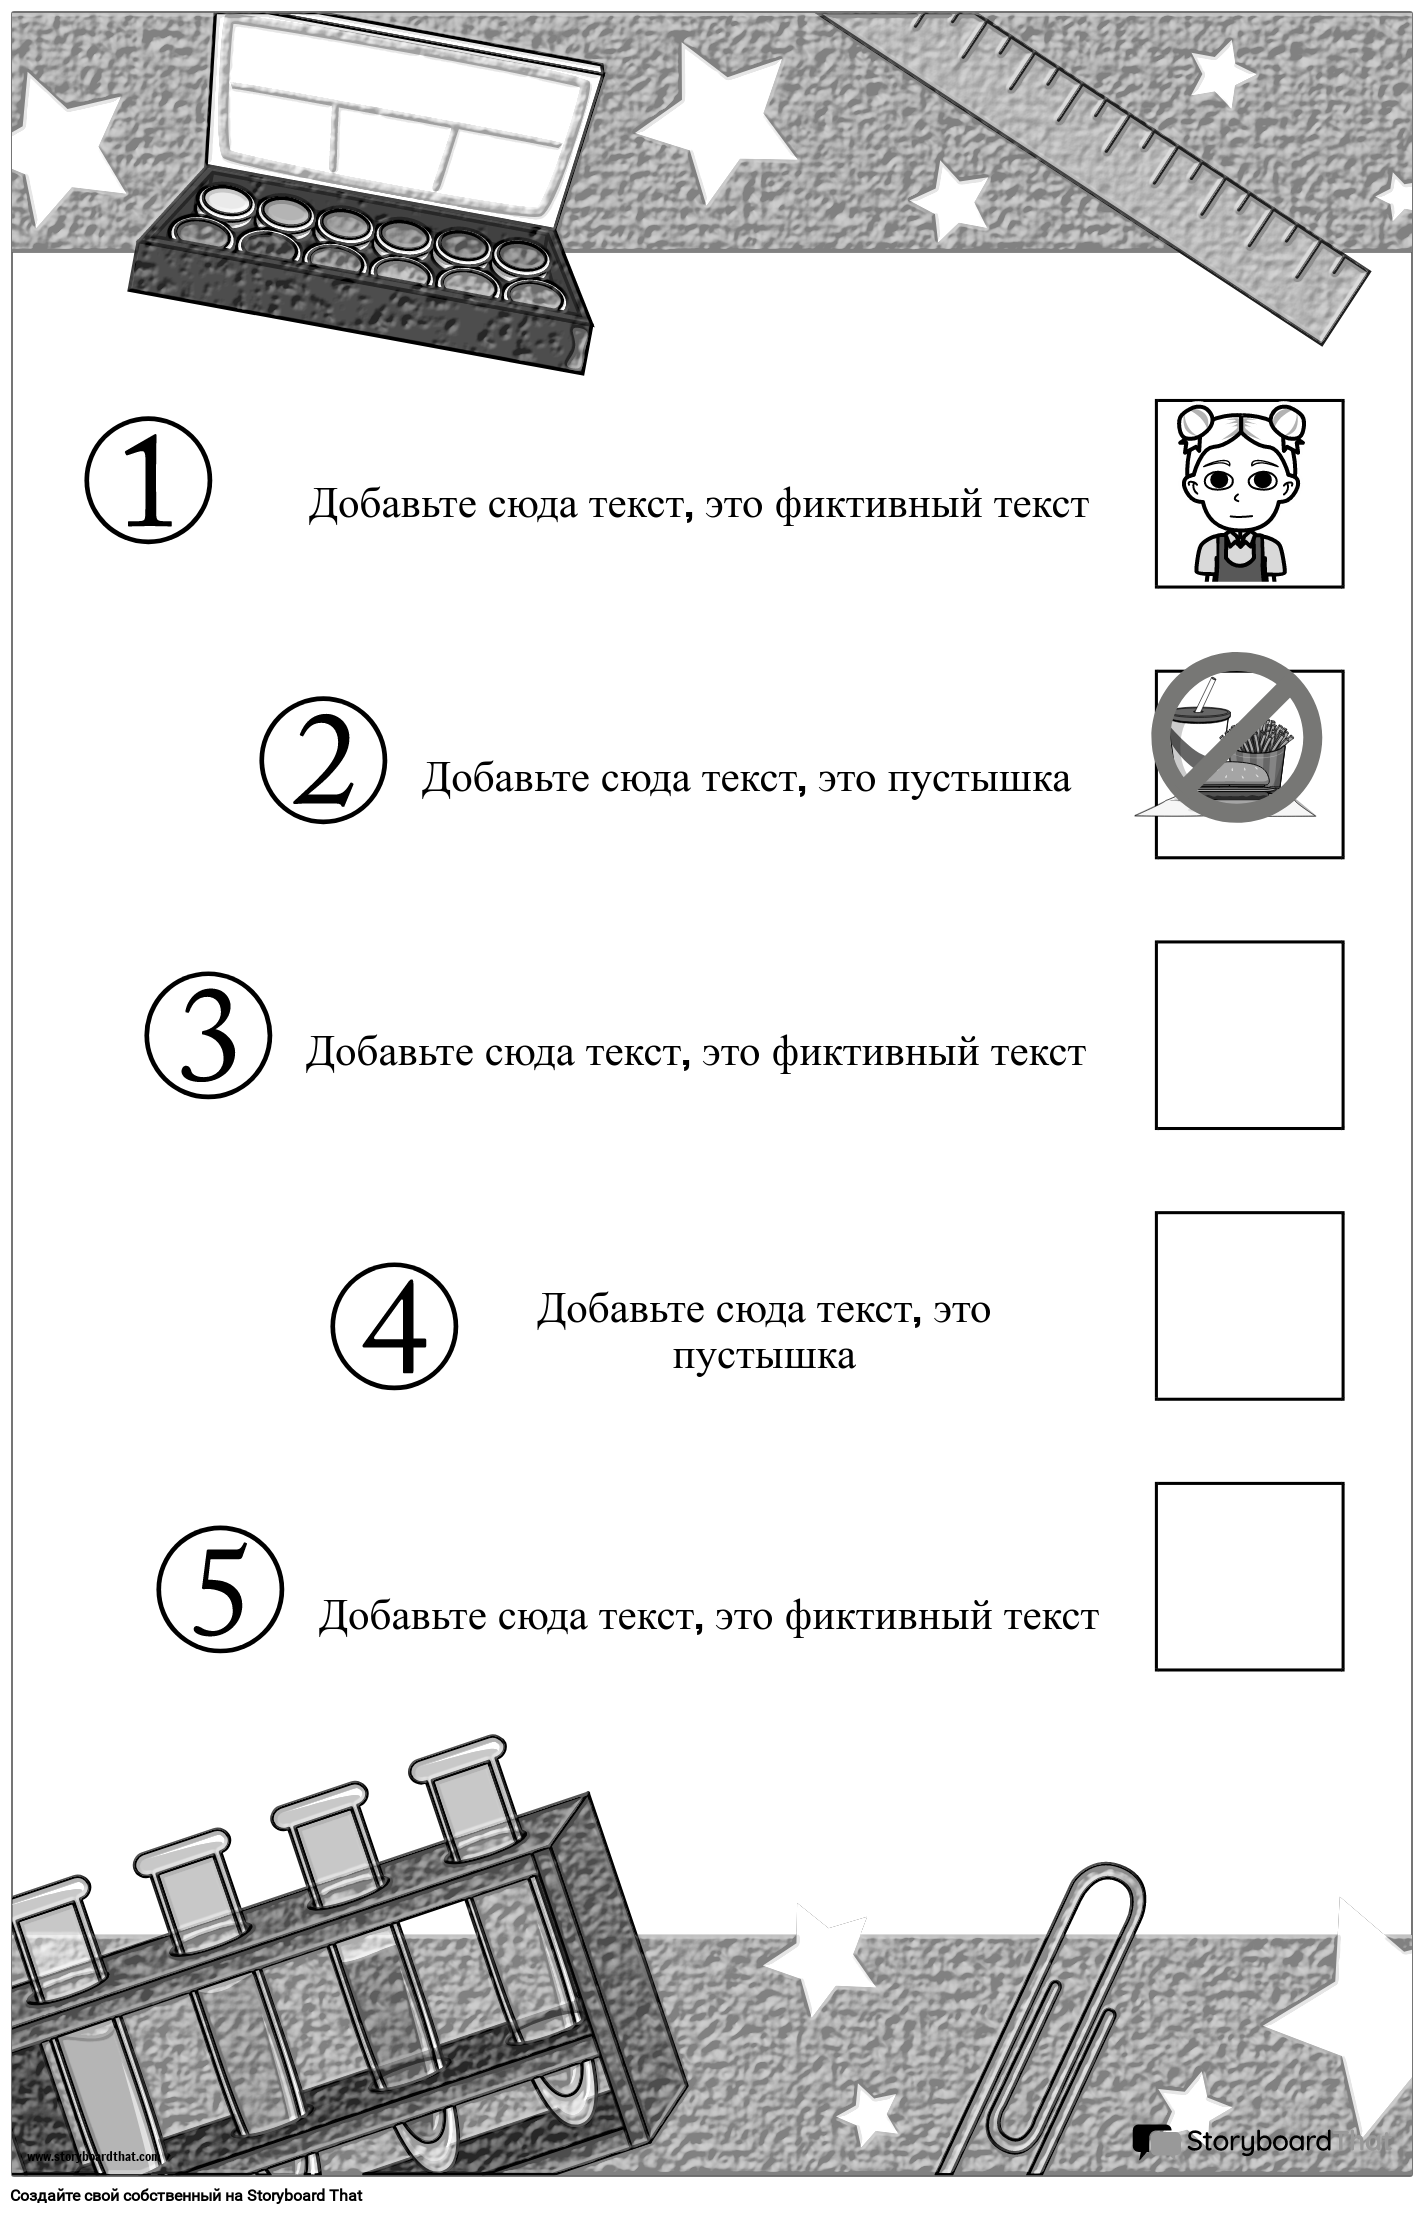 Плакат с правилами занятий в распечатанном виде Серый